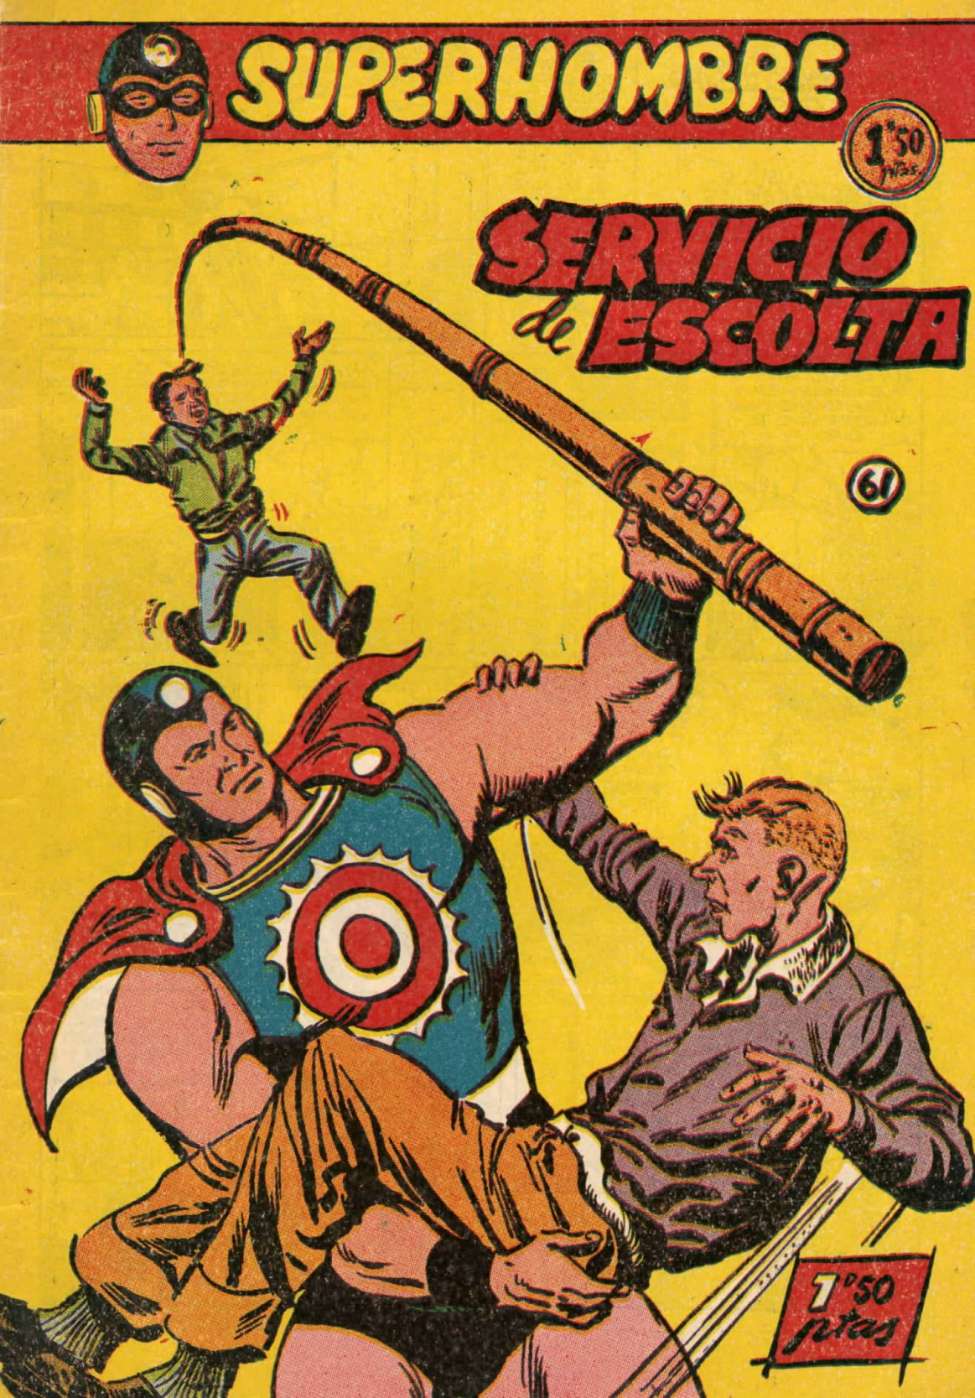 Comic Book Cover For SuperHombre 61 Servicio de escolta